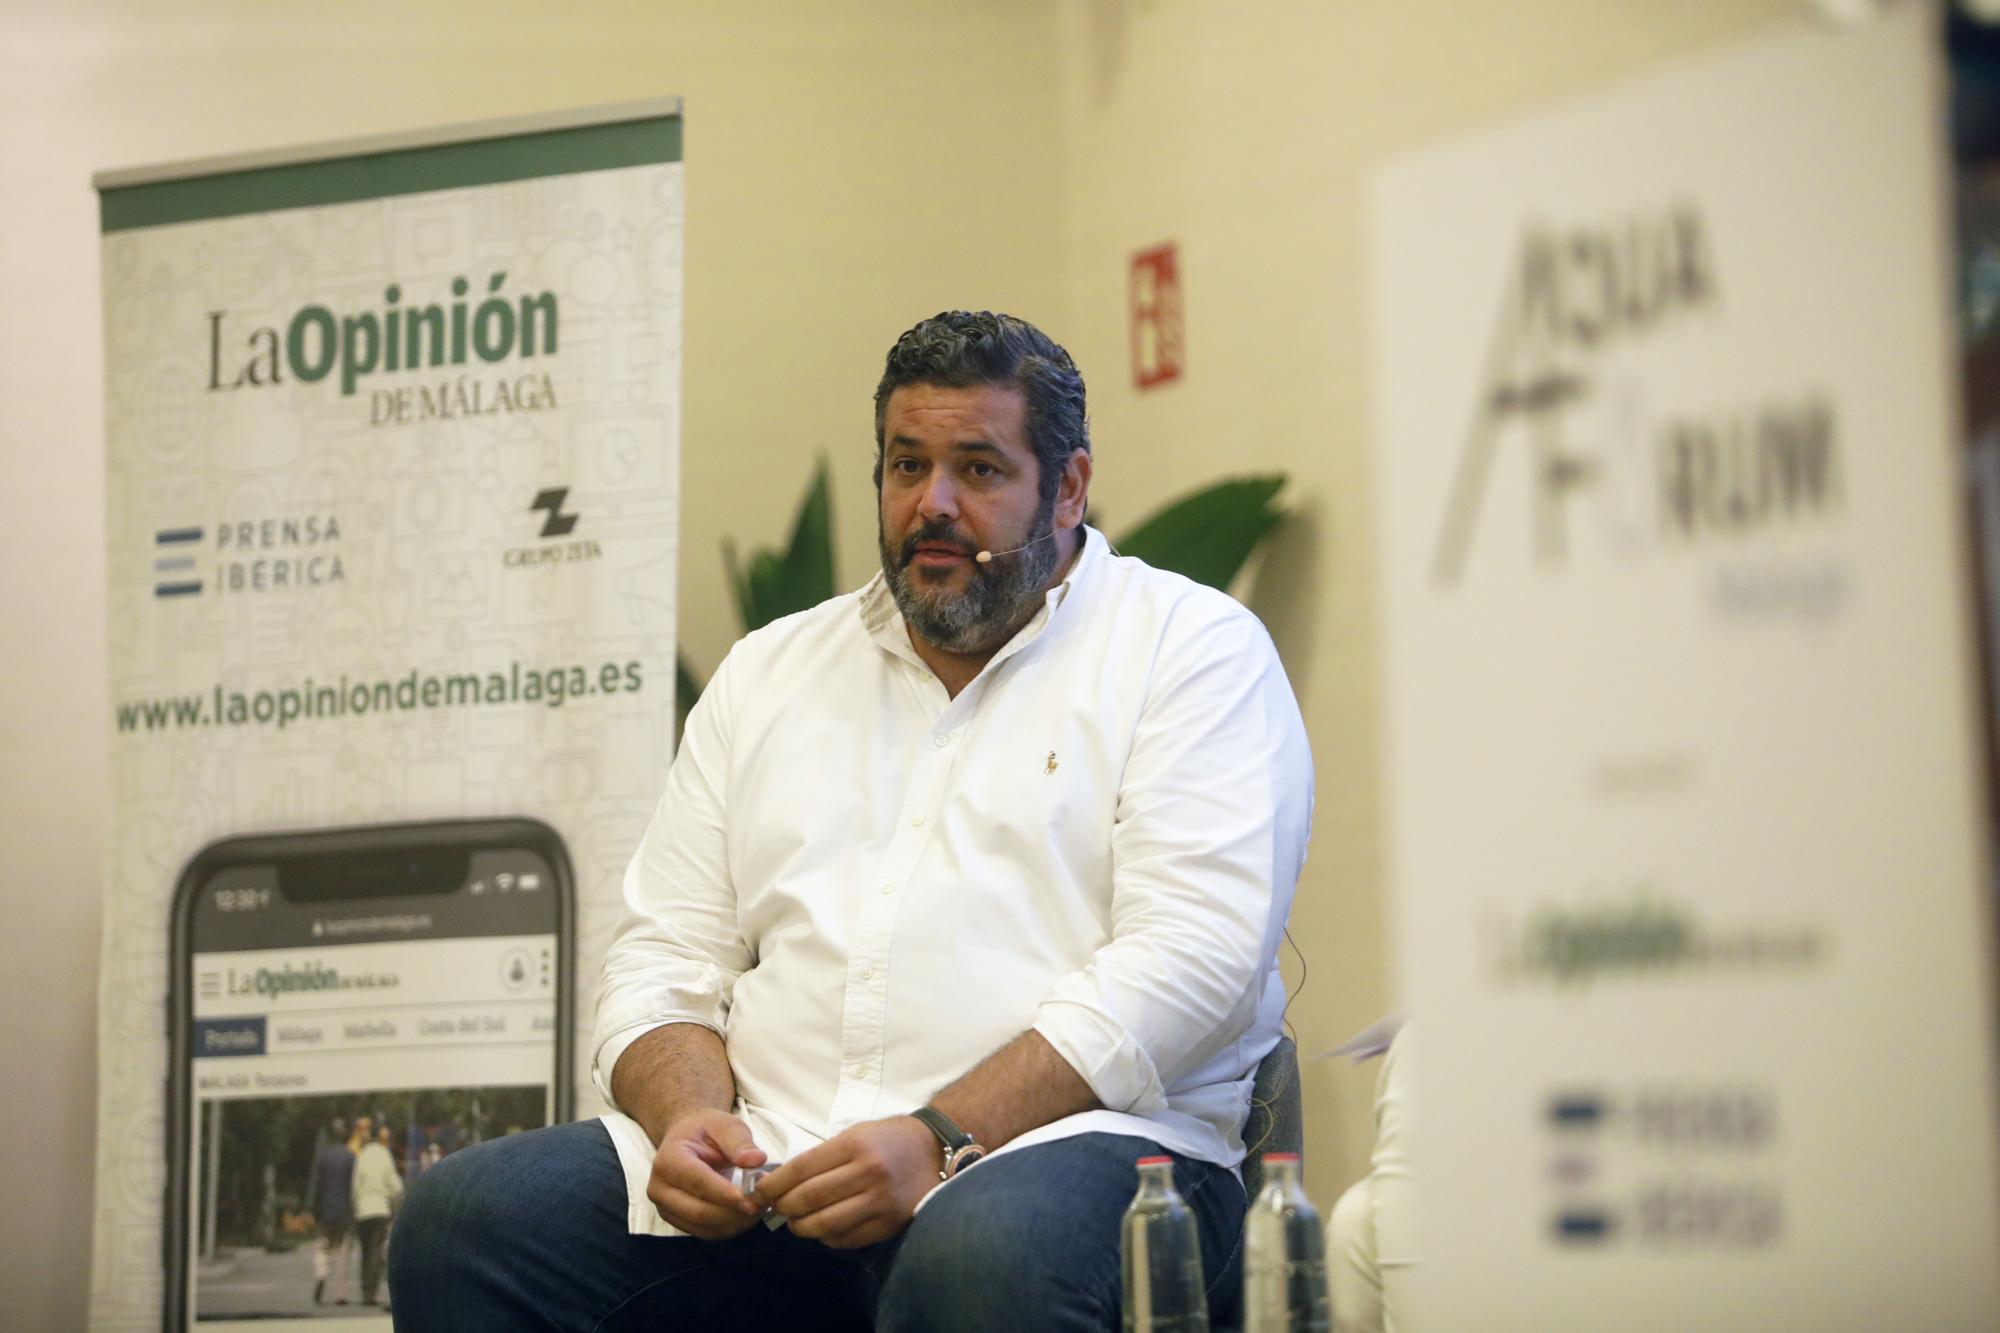 La Opinión y Prensa Ibérica celebran Aquaforum Málaga